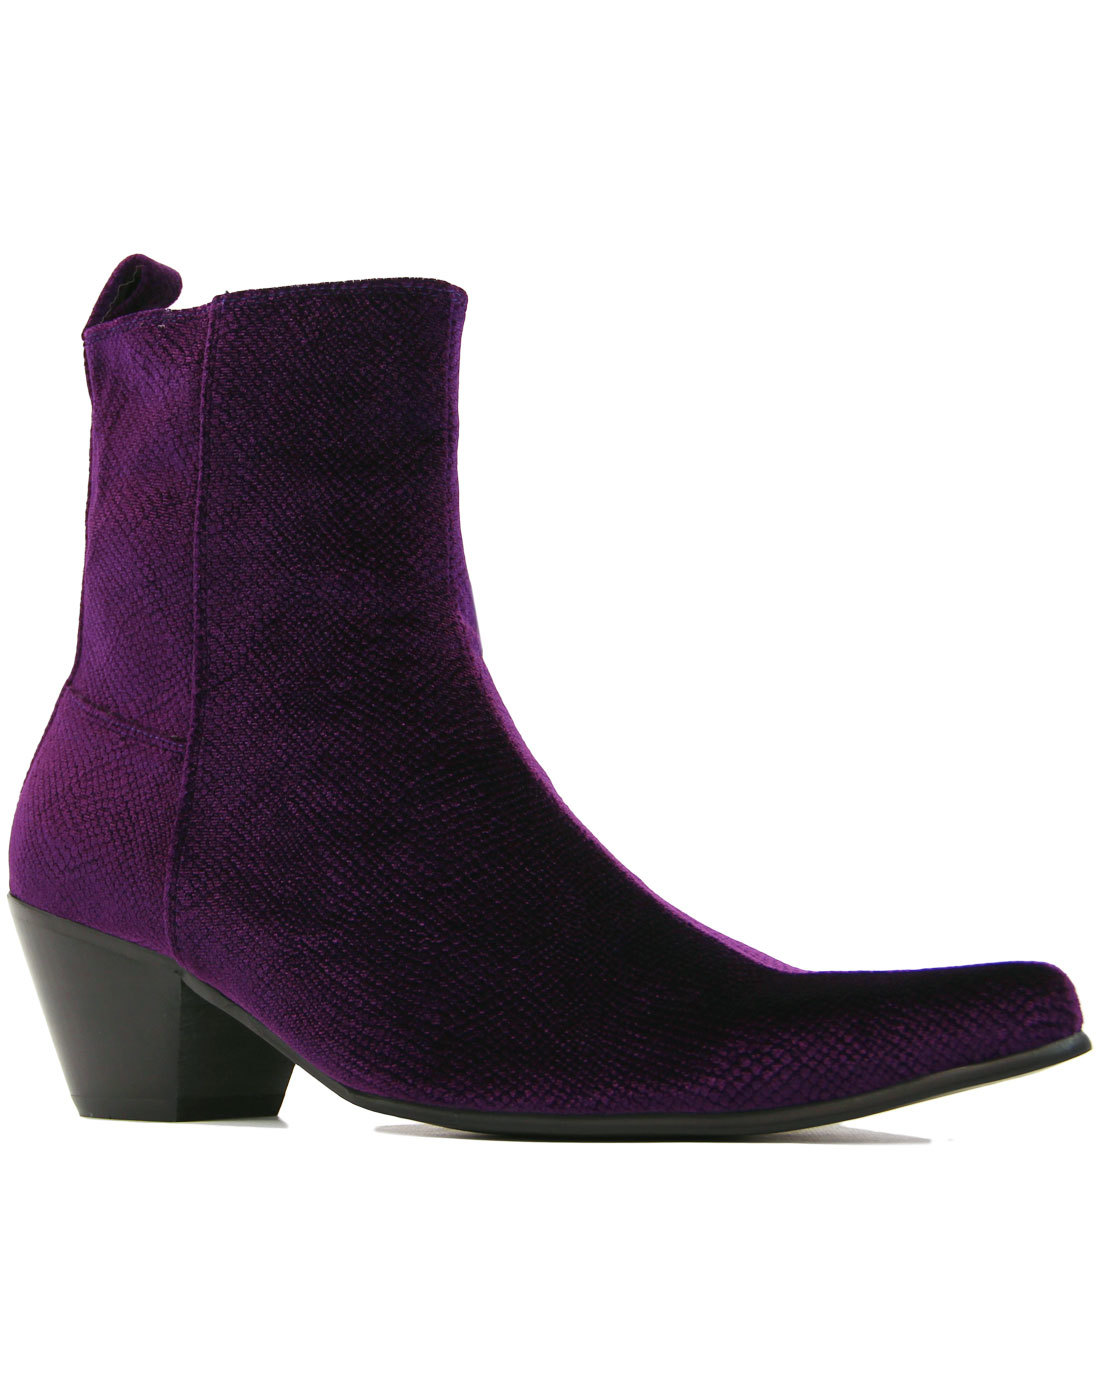 purple velvet shoes mens